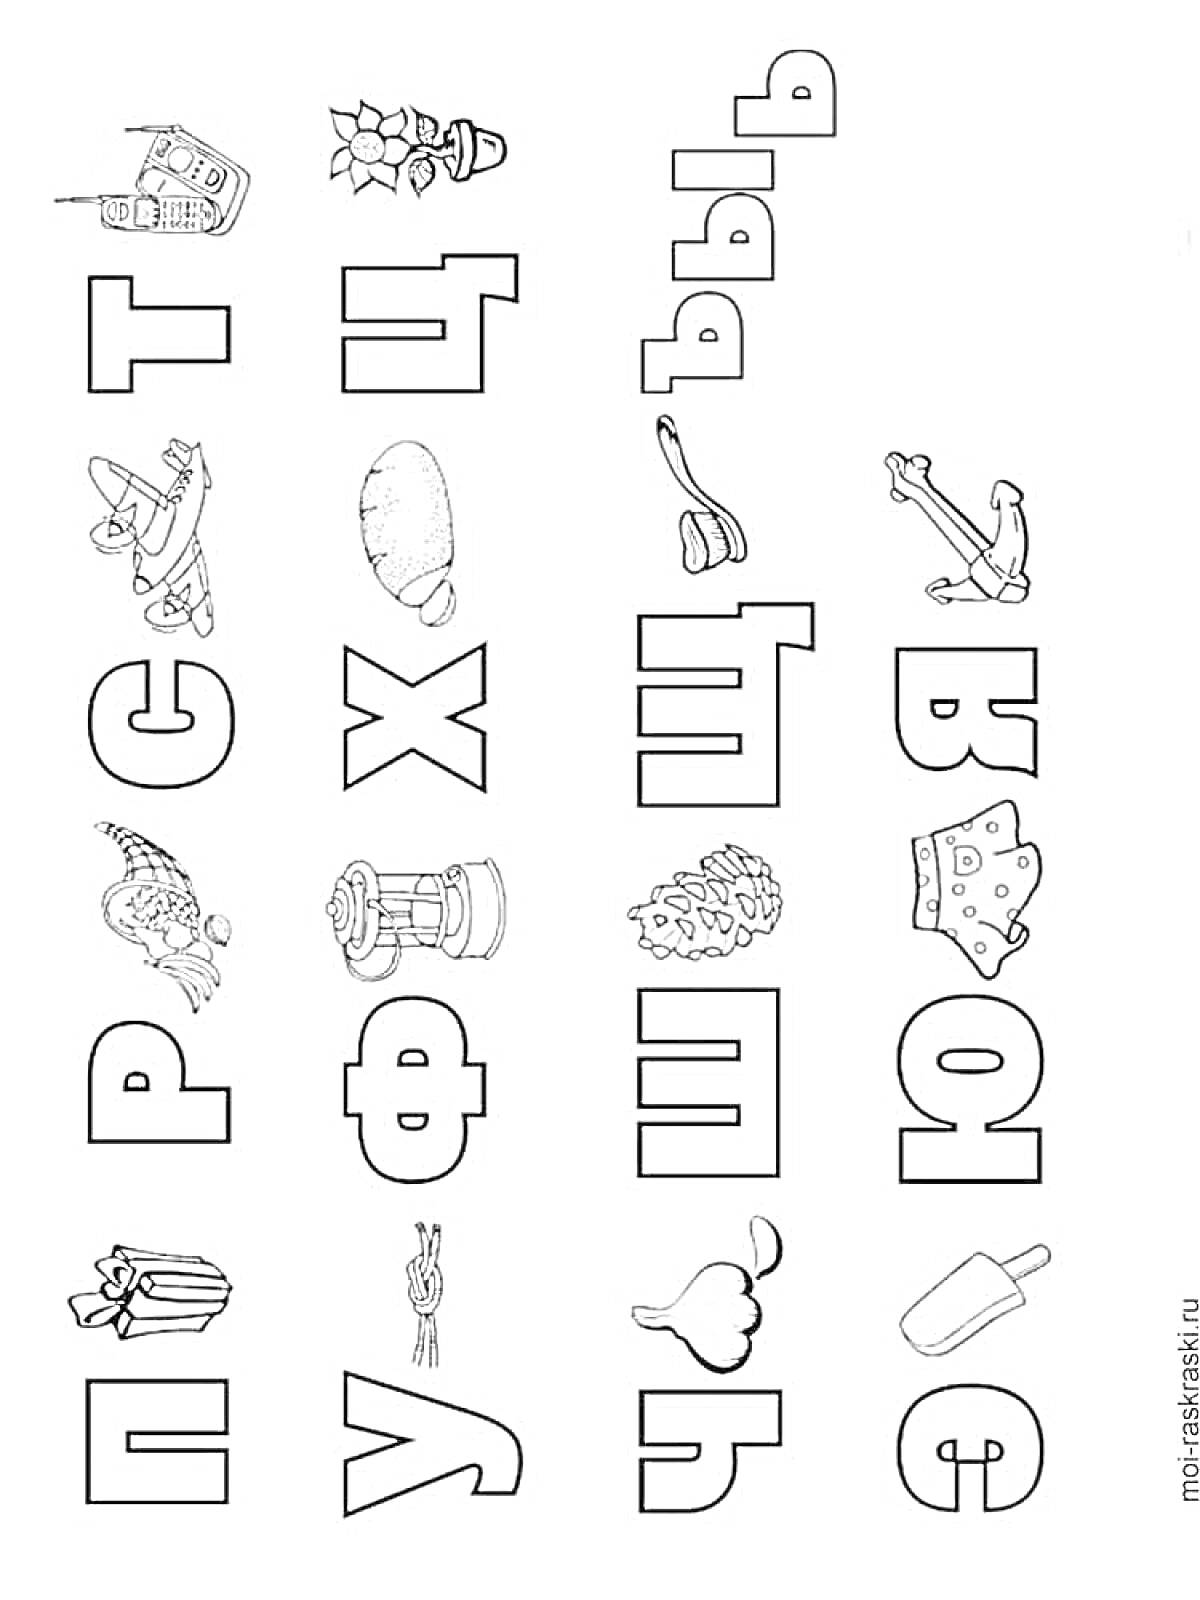 Алфавит с предметами: телефон, цветы, чайник, робот, хлеб, швабра, самолет, пила, ёлка, корона, ракета, кашалот, шишка, яйцо, коробка, зелень, чеснок, мороженое